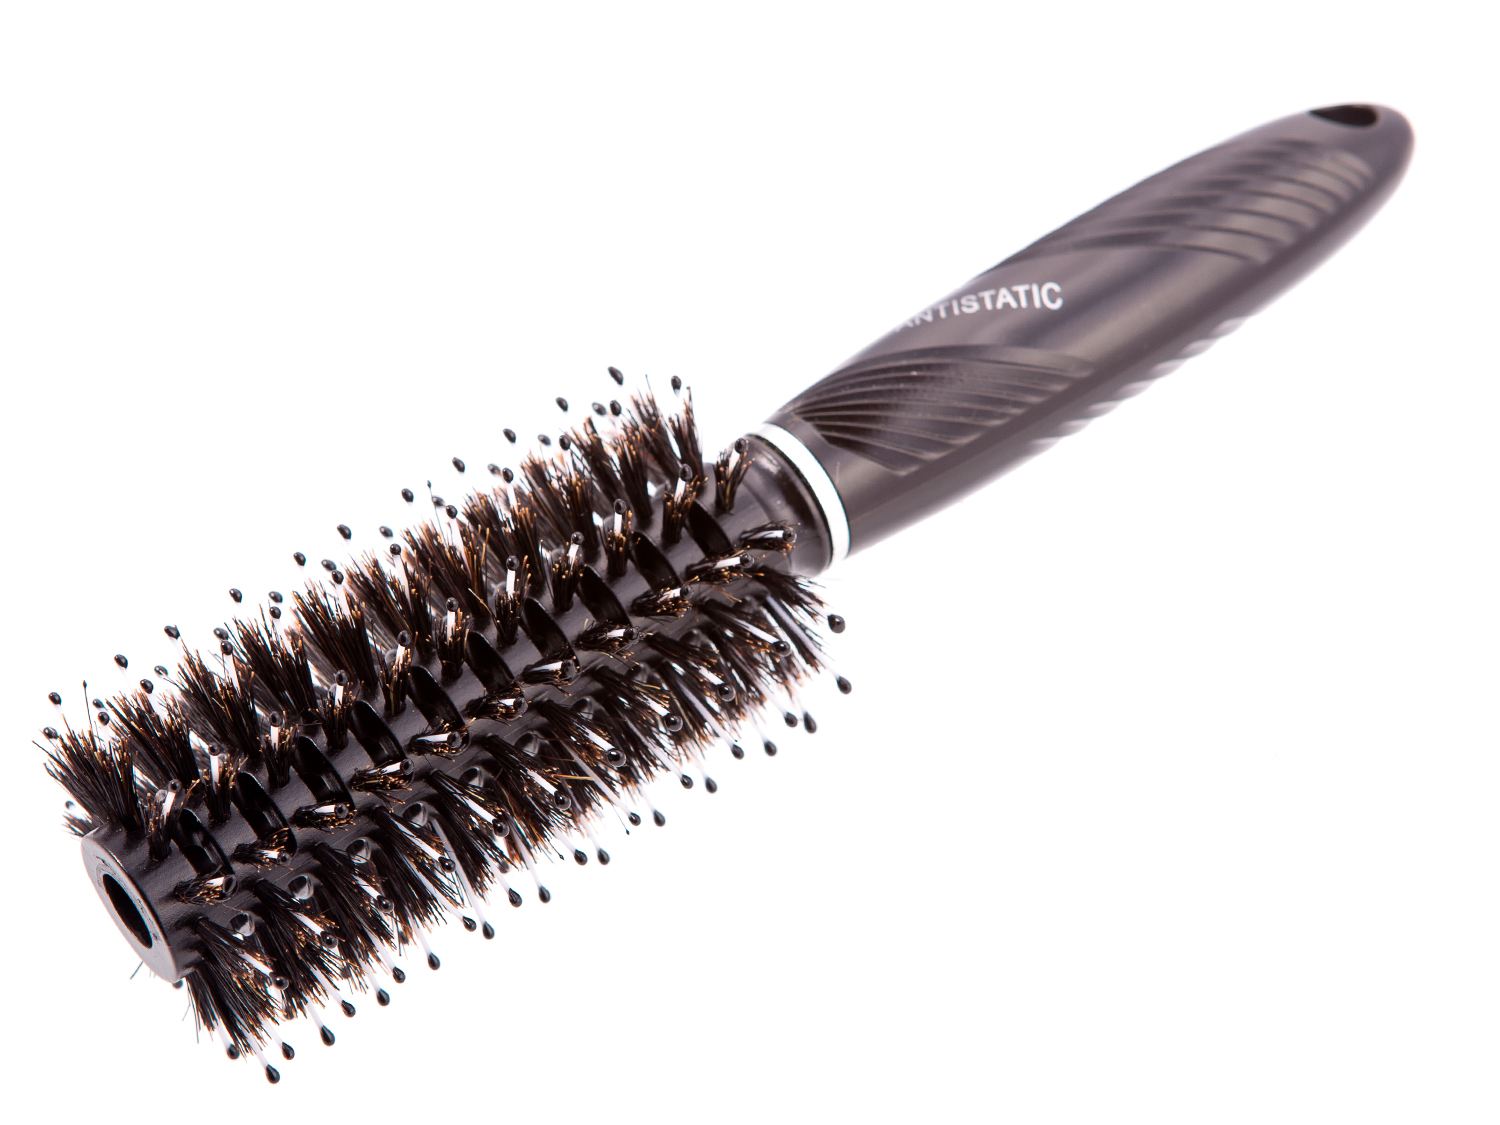 Расческа брашинг Quilin круглая продувная для укладки волос 22х5 см